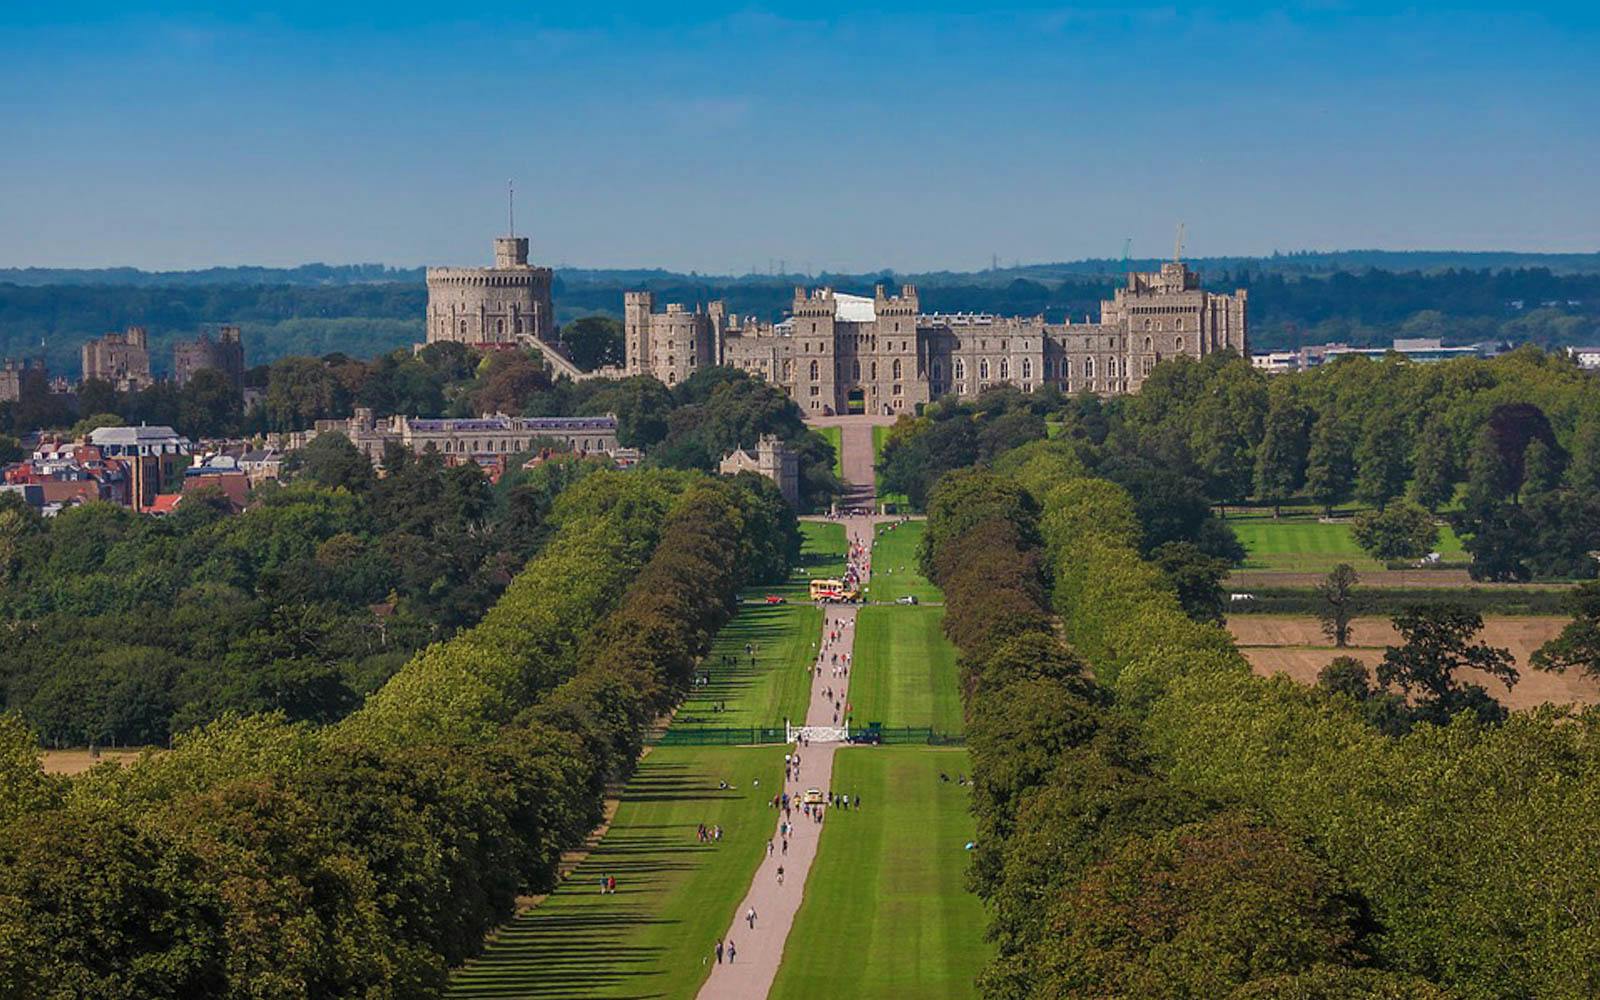 Visiting Windsor Castle London | Windsor Castle Tickets & Tours